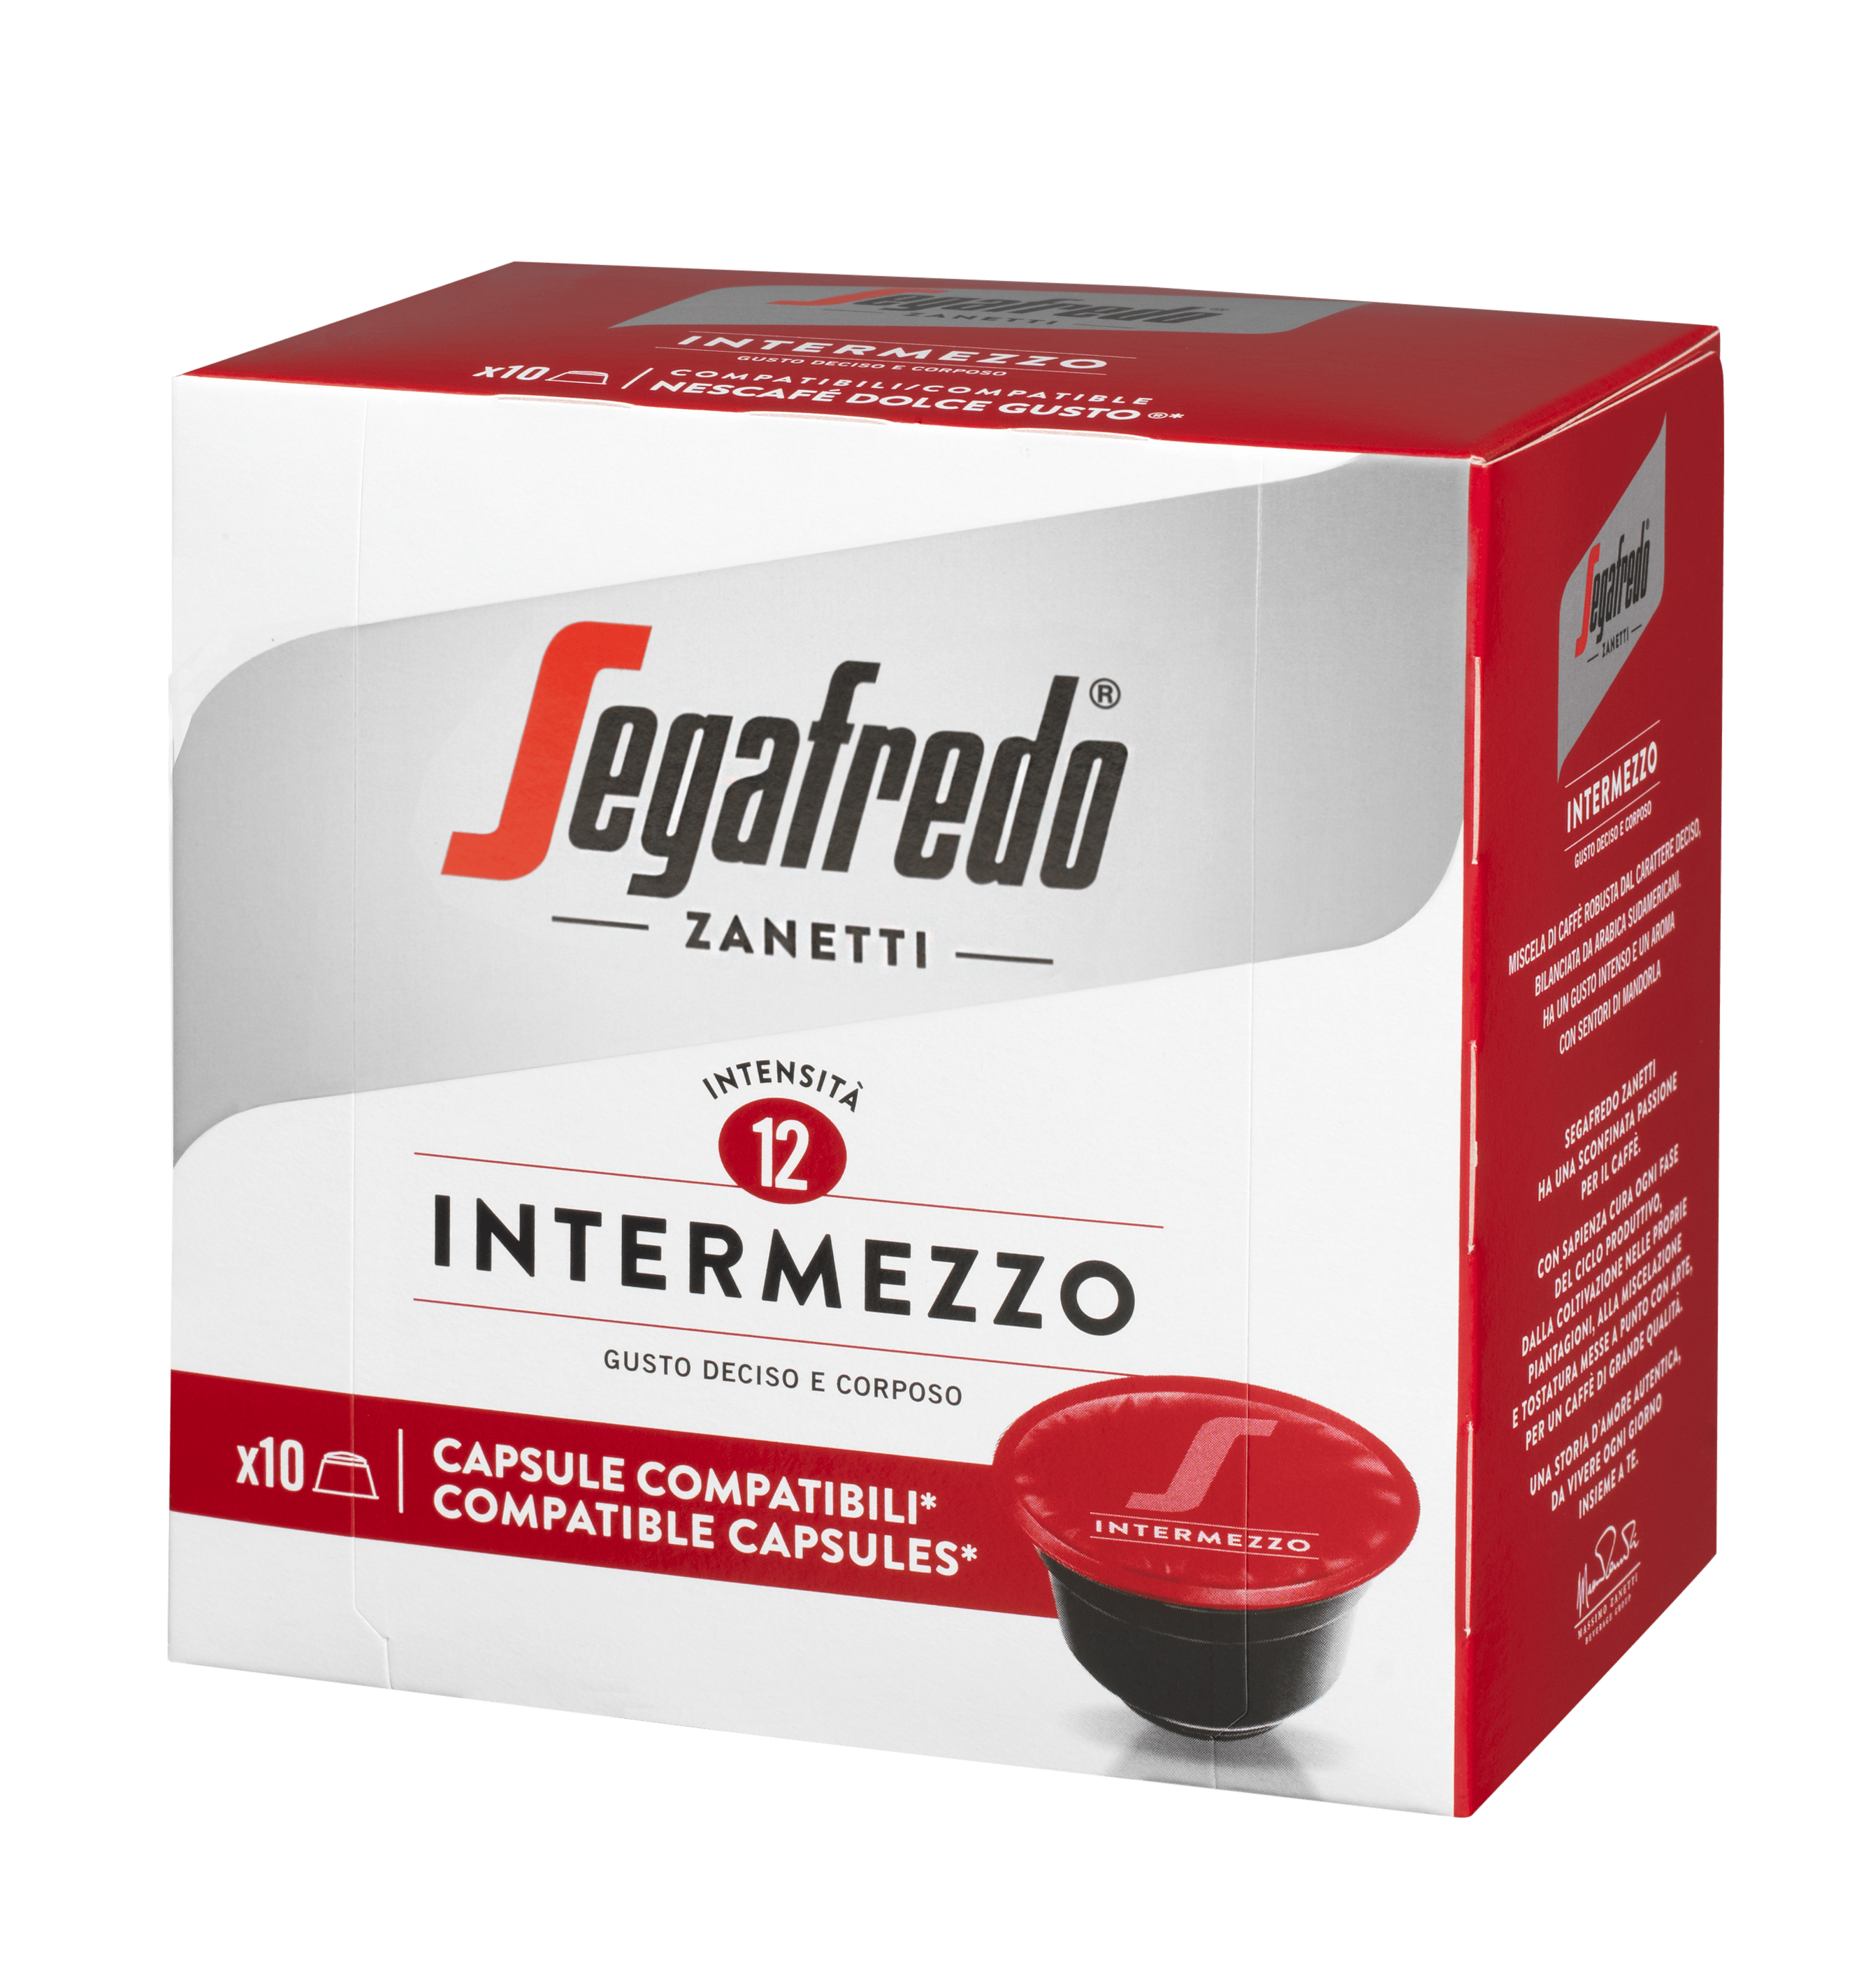 SEGAFREDO ZANETTI - INTERMEZZO膠囊咖啡